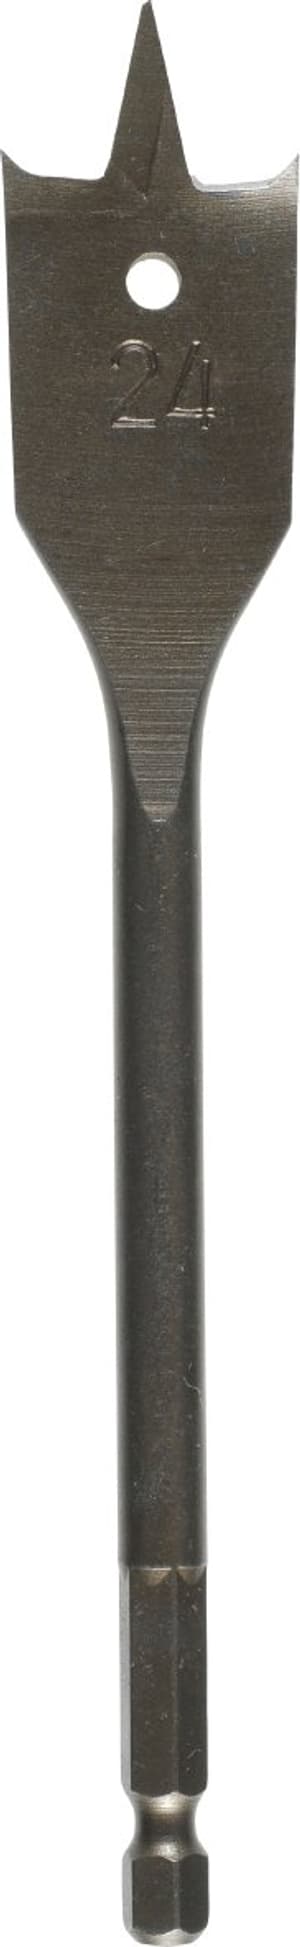 Flachfräsbohrer, ø 26 mm